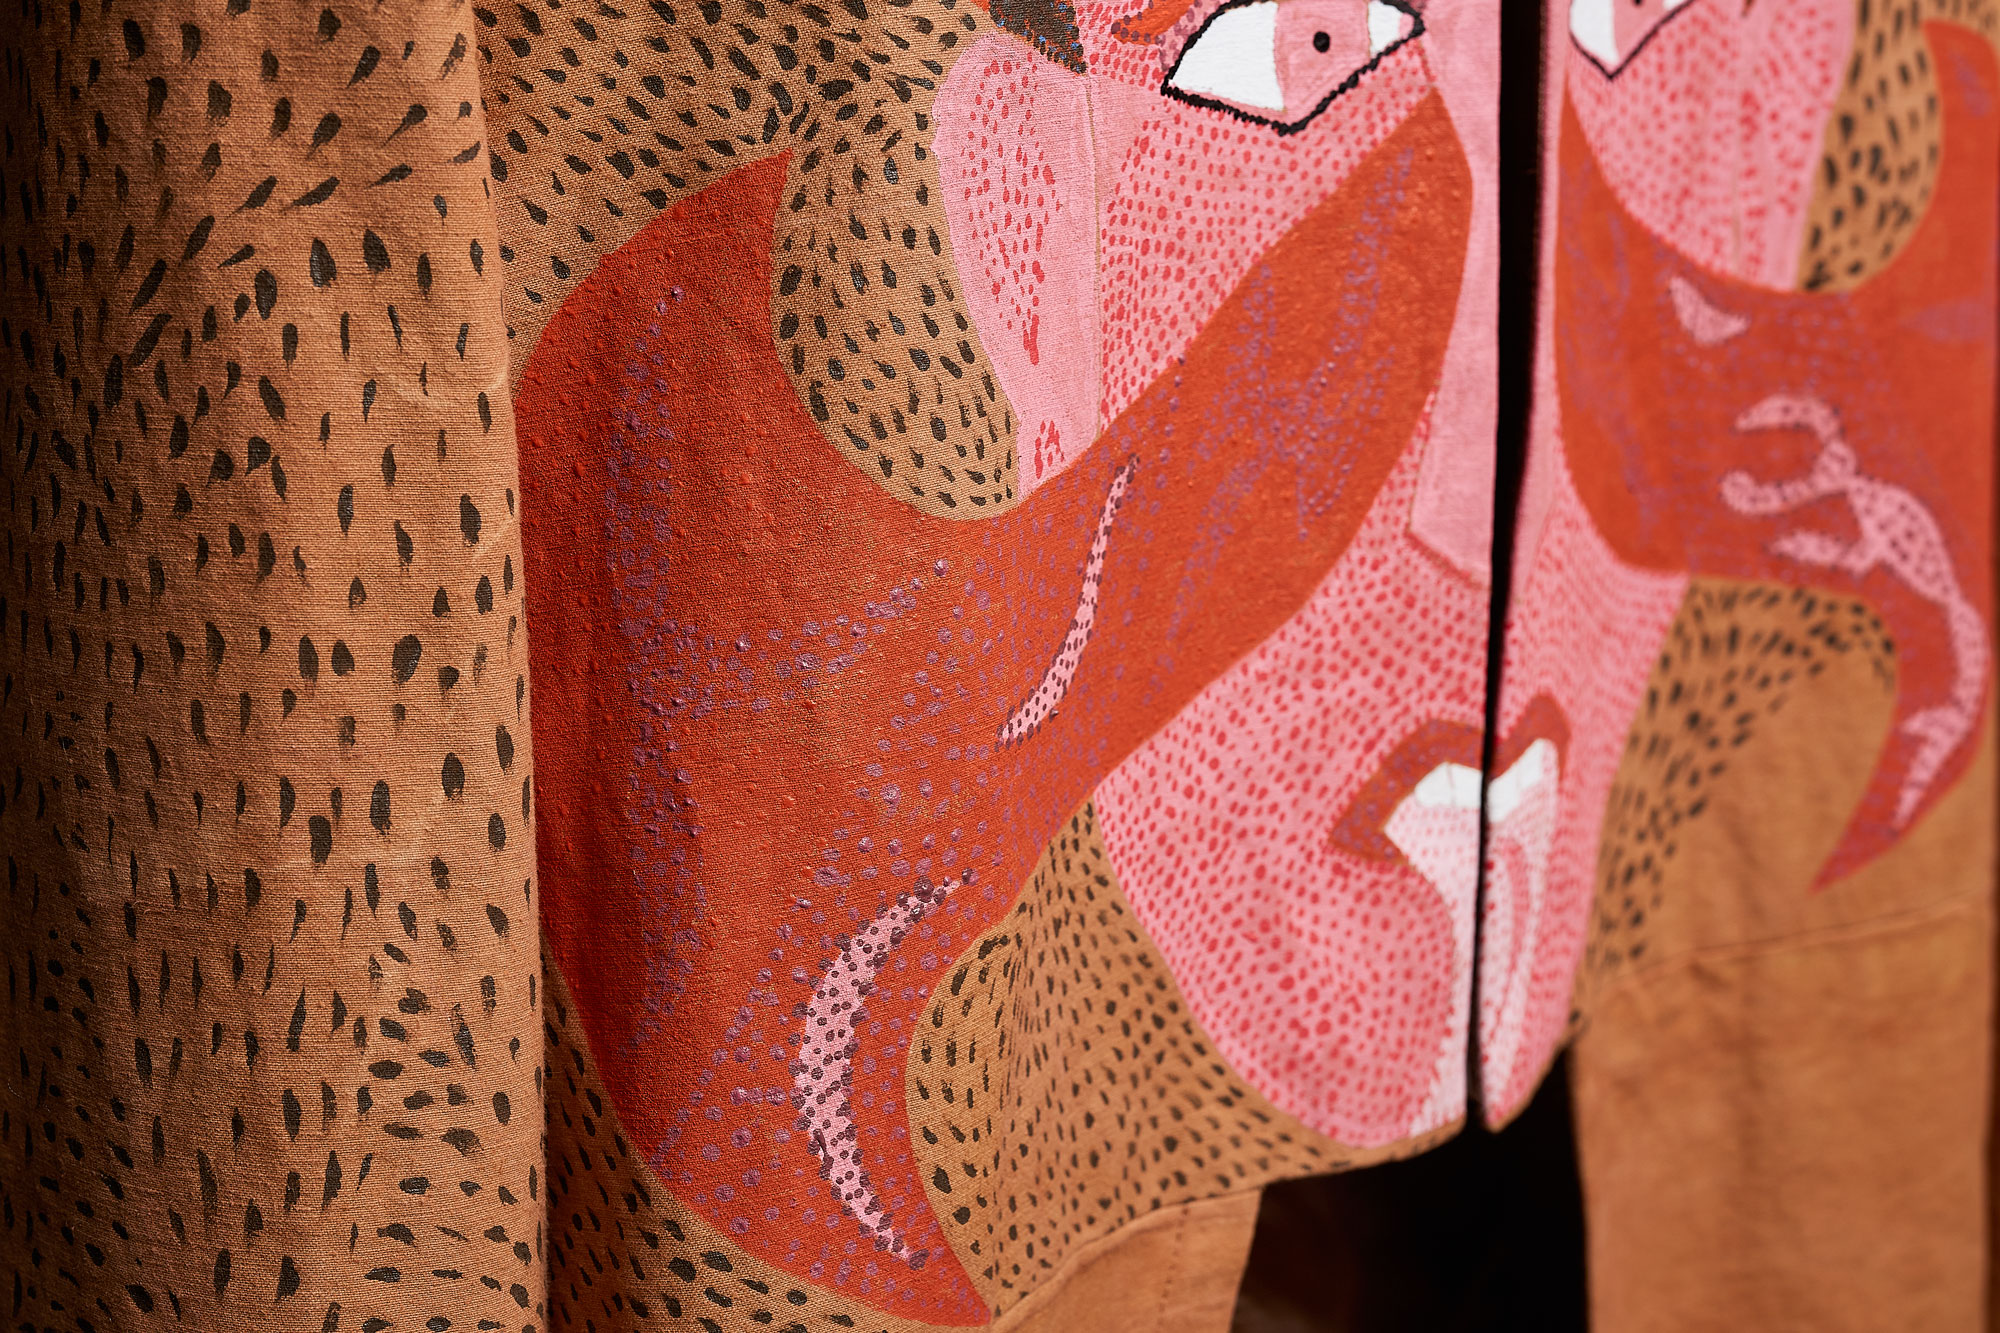 La Tête - Toile de coton. Teinture manuelle Cutch et peinture à main levée - env. 60 x 60 cm - 2018 - Photo : Barthelemy DECOBECQ 